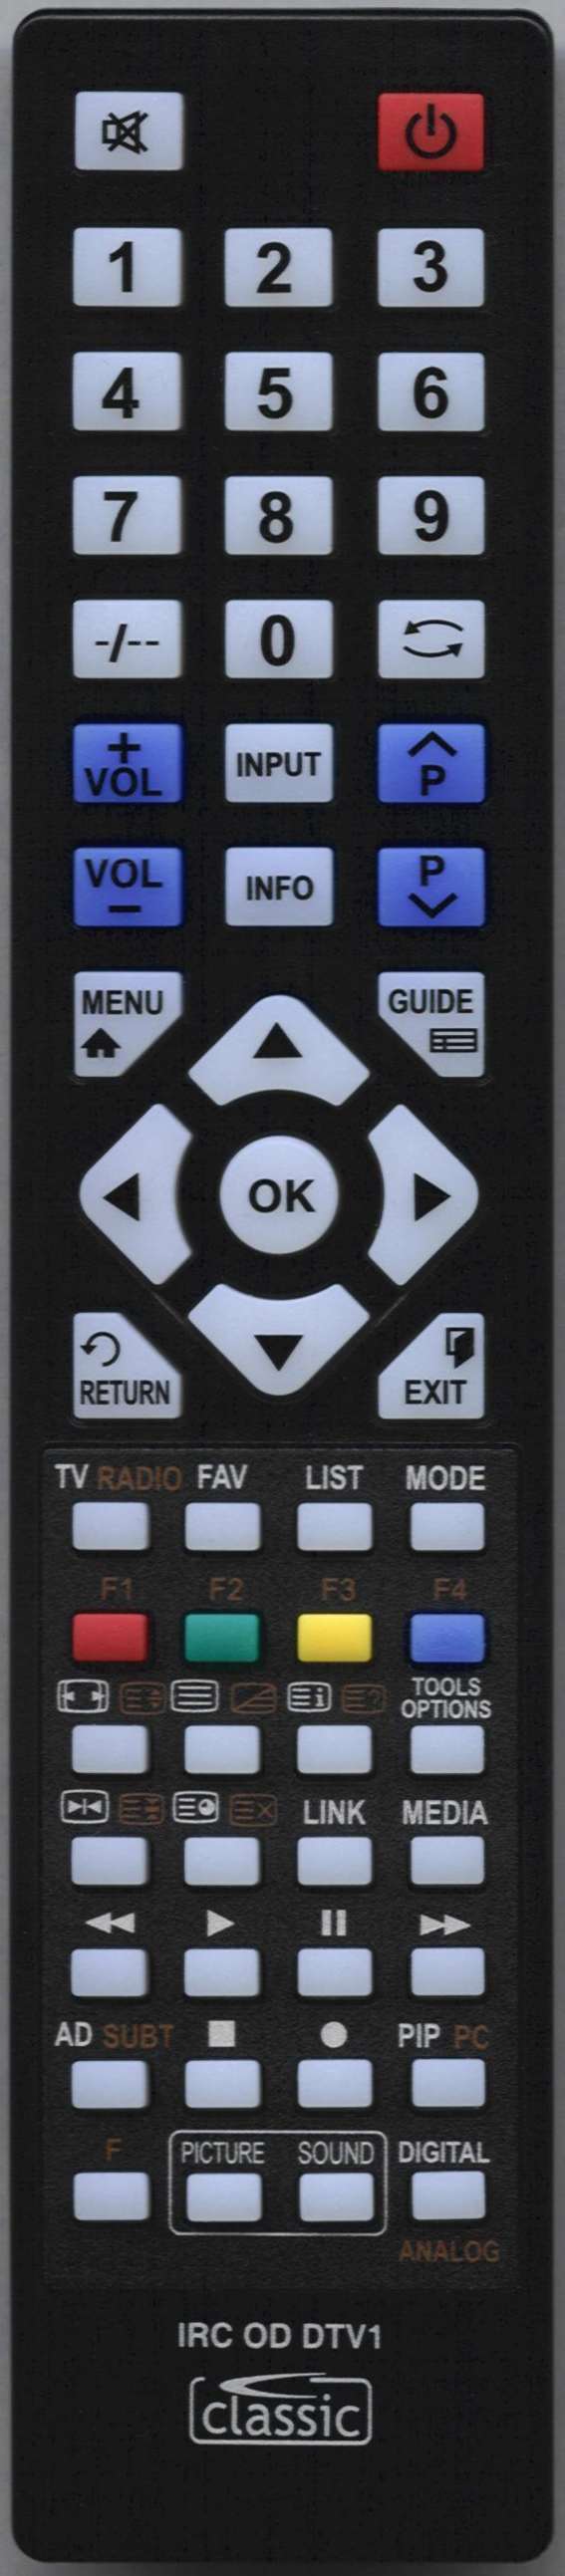 LUXOR 3390 Remote Control